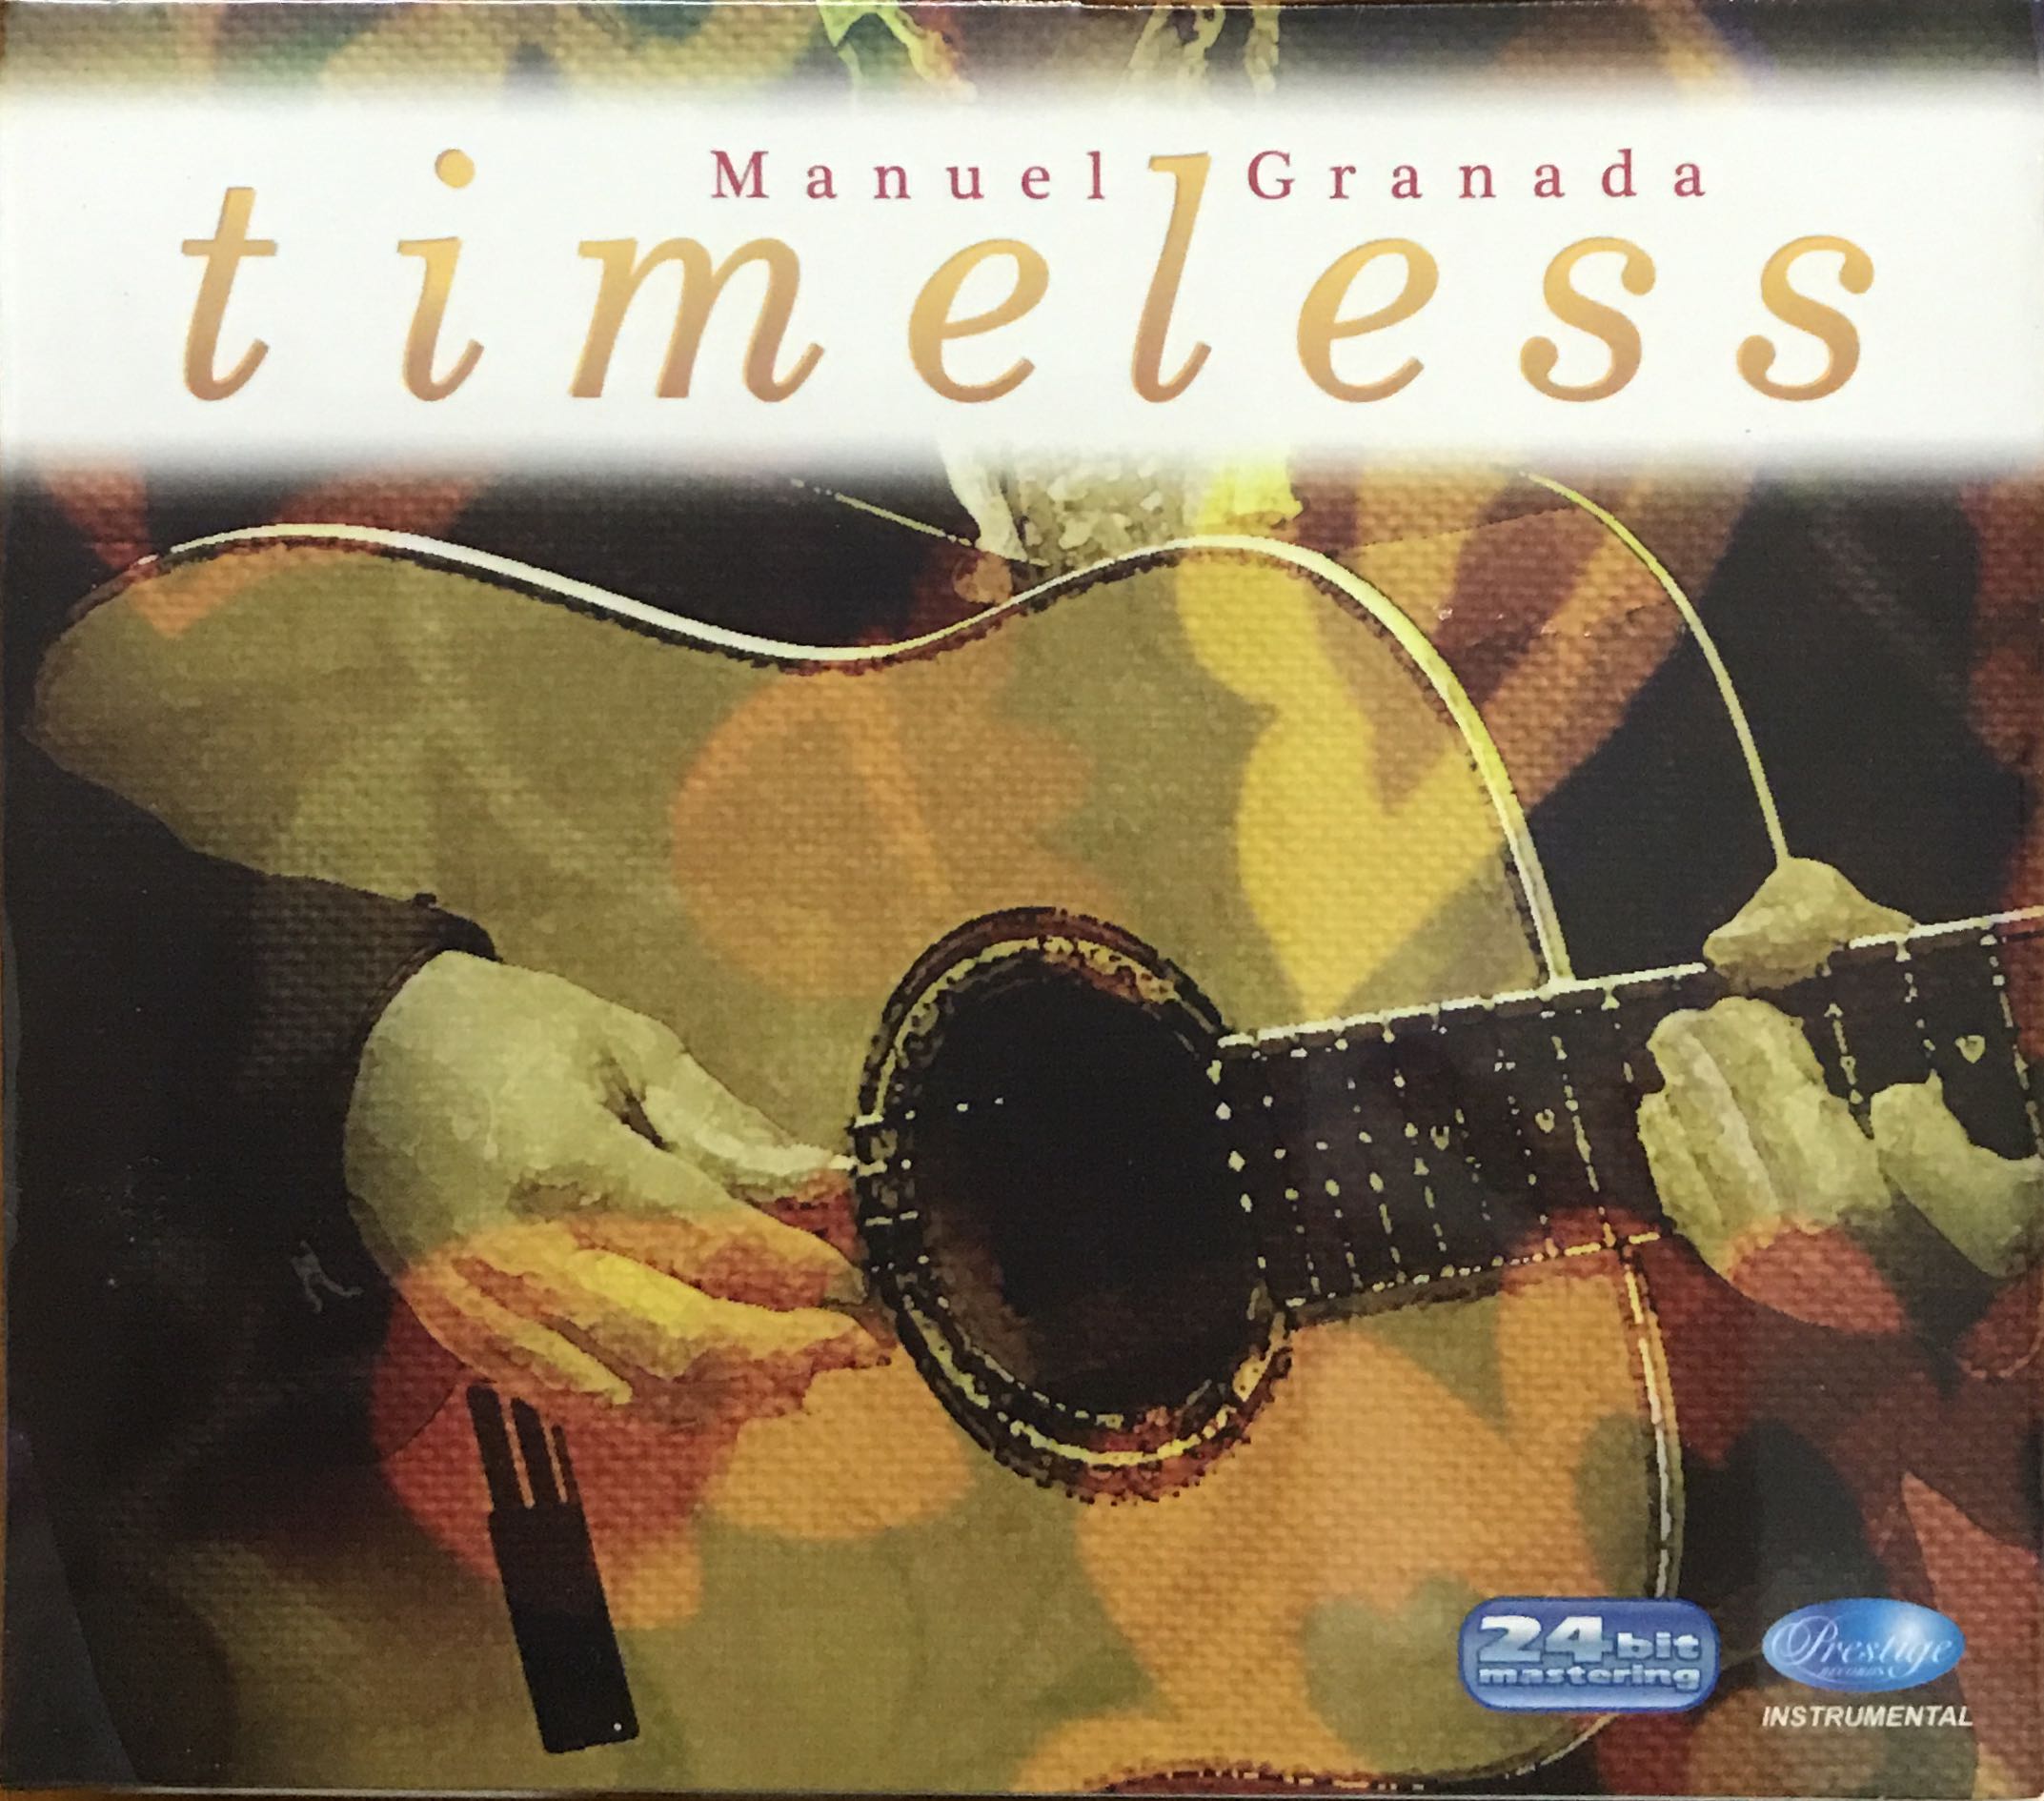 Manuel Granada - TIMELESS 24bit Remastering CD